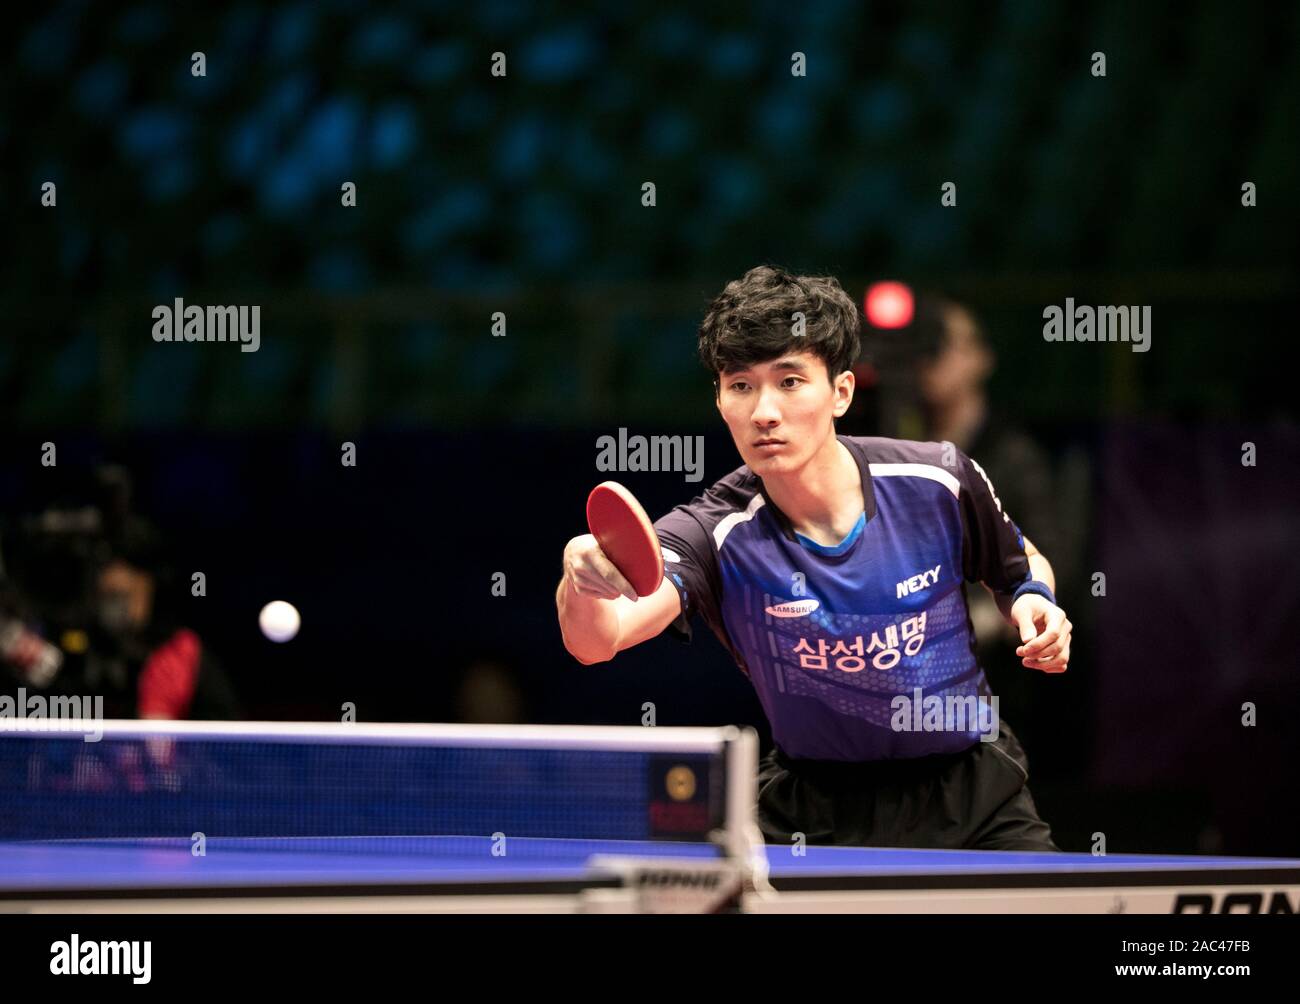 Lee Sang-su de la Corée du Sud est en action à l'encontre de la Jai Kanak NOUS (pas sur la photo) lors d'un match au stade de groupe Fédération Internationale de Tennis de Table (ITTF) Coupe du monde dans la ville de Chengdu, dans le sud-ouest de la province chinoise du Sichuan, le 29 novembre 2019. Lee Sang-su battu 4-2 avec Jai Kanak. Banque D'Images